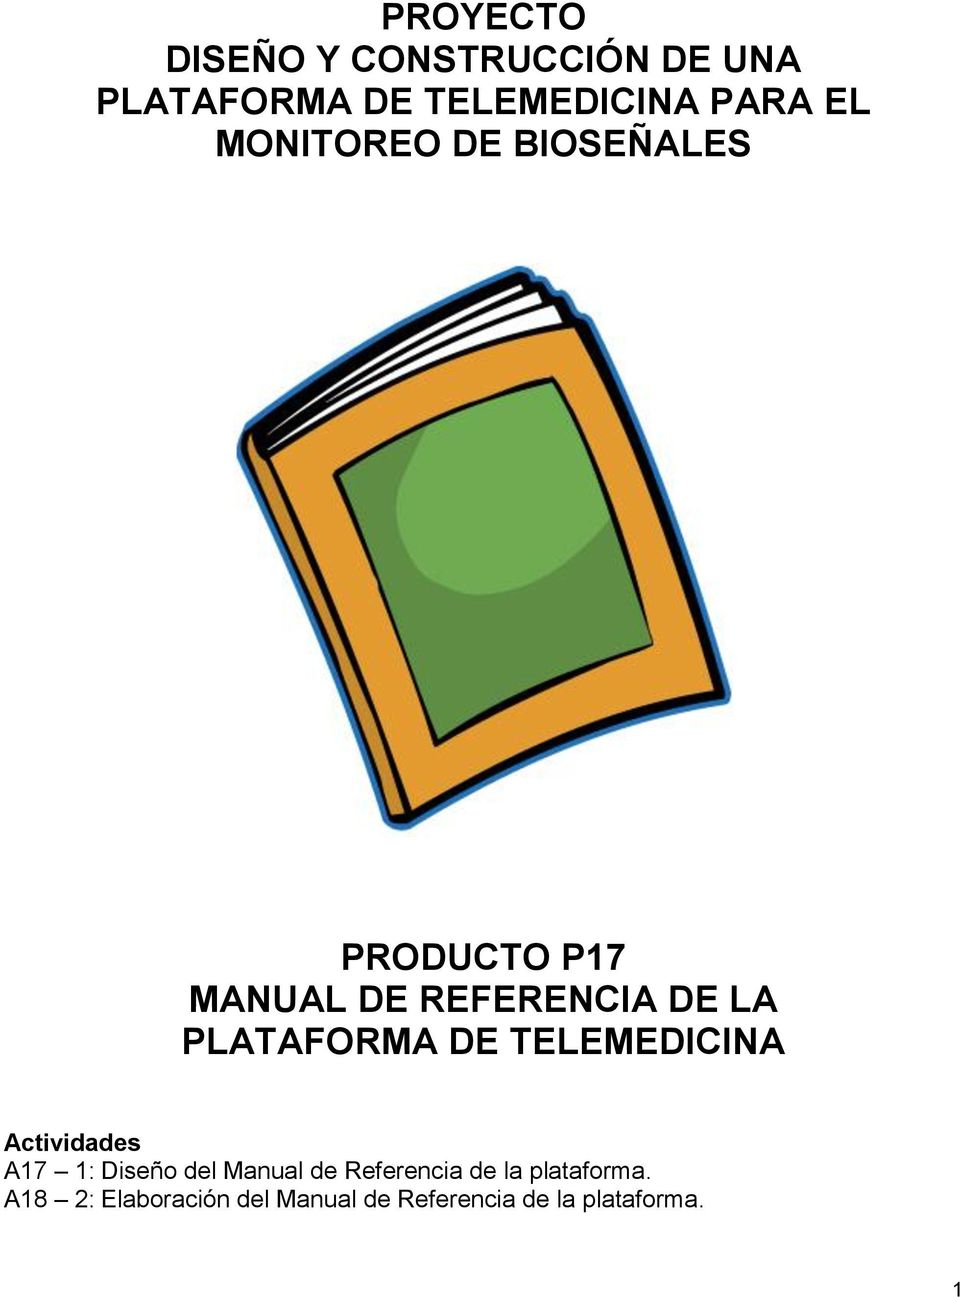 PLATAFORMA DE TELEMEDICINA Actividades A17 1: Diseño del Manual de